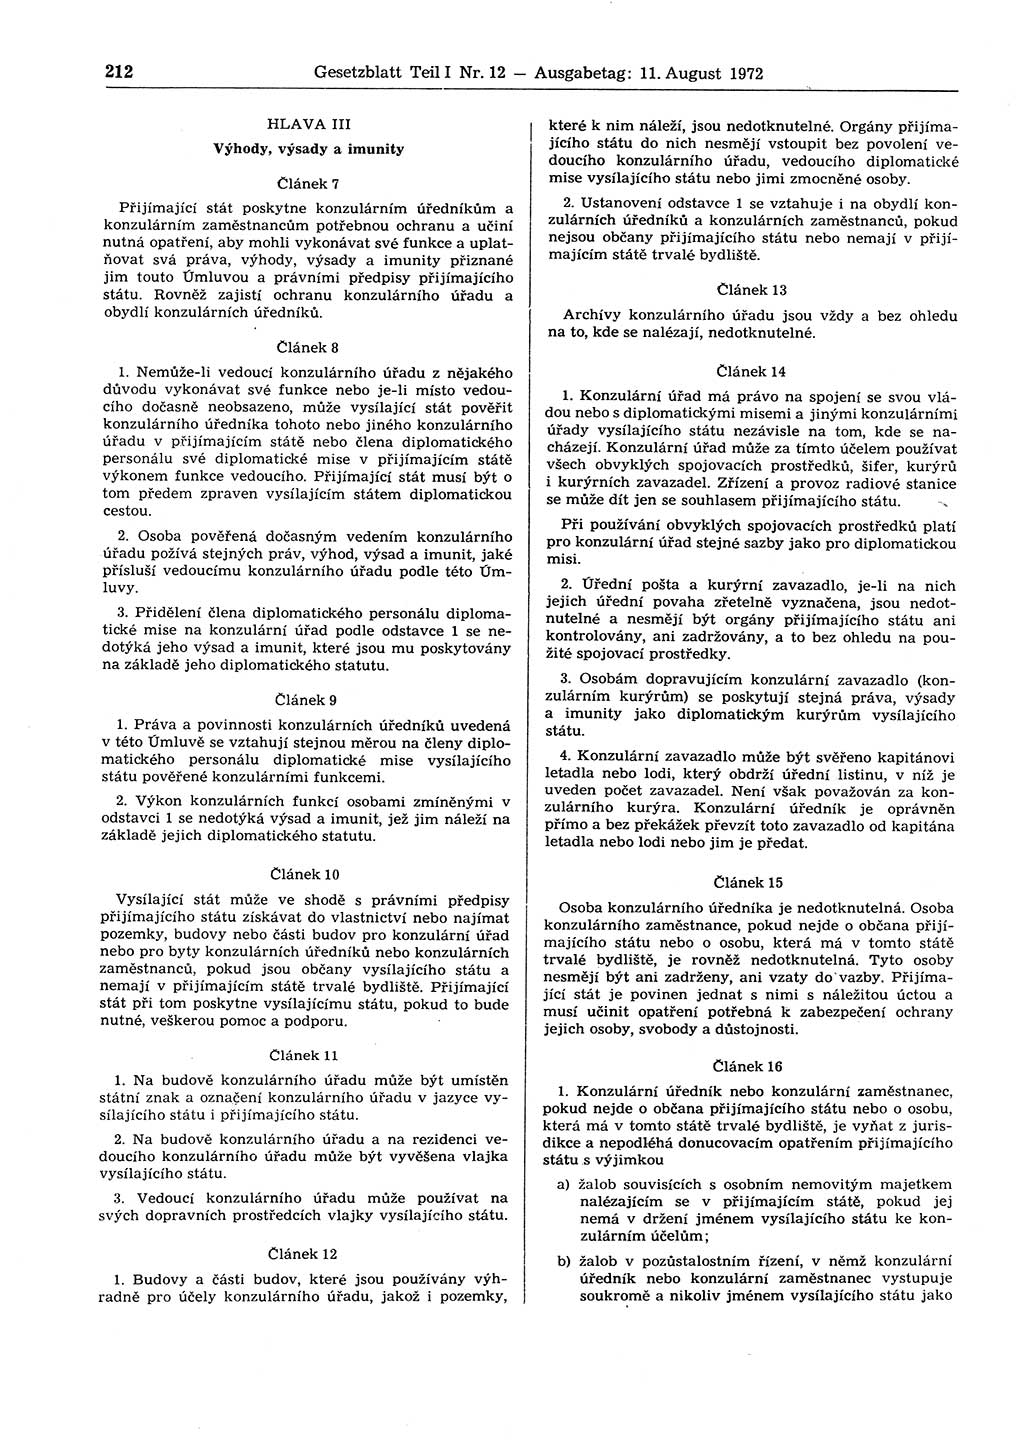 Gesetzblatt (GBl.) der Deutschen Demokratischen Republik (DDR) Teil Ⅰ 1972, Seite 212 (GBl. DDR Ⅰ 1972, S. 212)